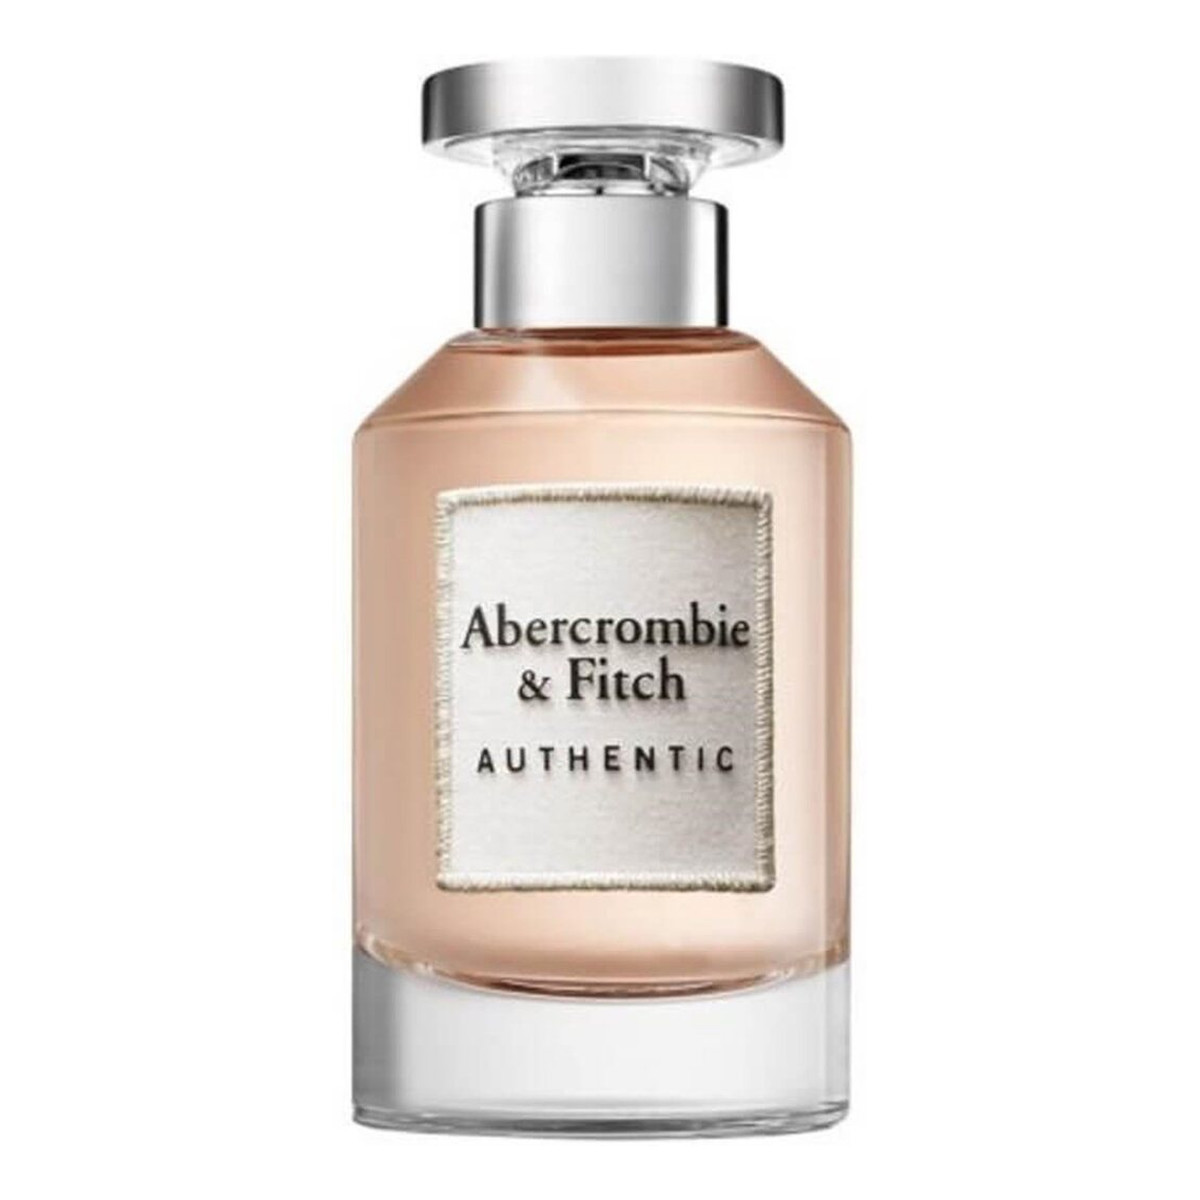 Abercrombie & Fitch Authentic Woman woda perfumowana 100ml